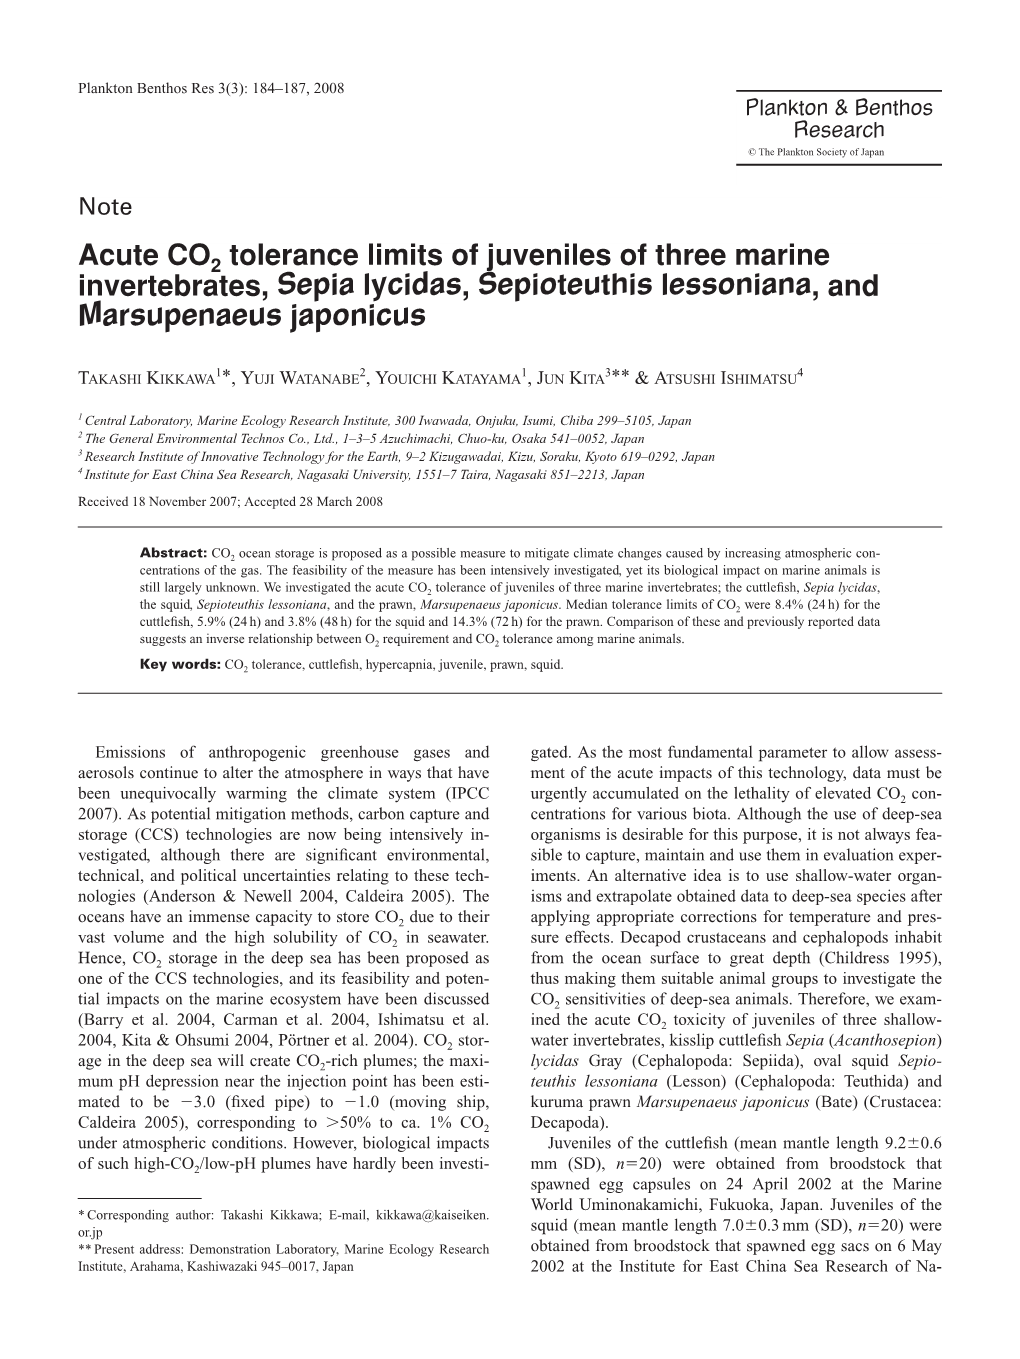 Acute CO2 Tolerance Limits of Juveniles of Three Marine Invertebrates, Sepia Lycidas, Sepioteuthis Lessoniana, and Marsupenaeus Japonicus